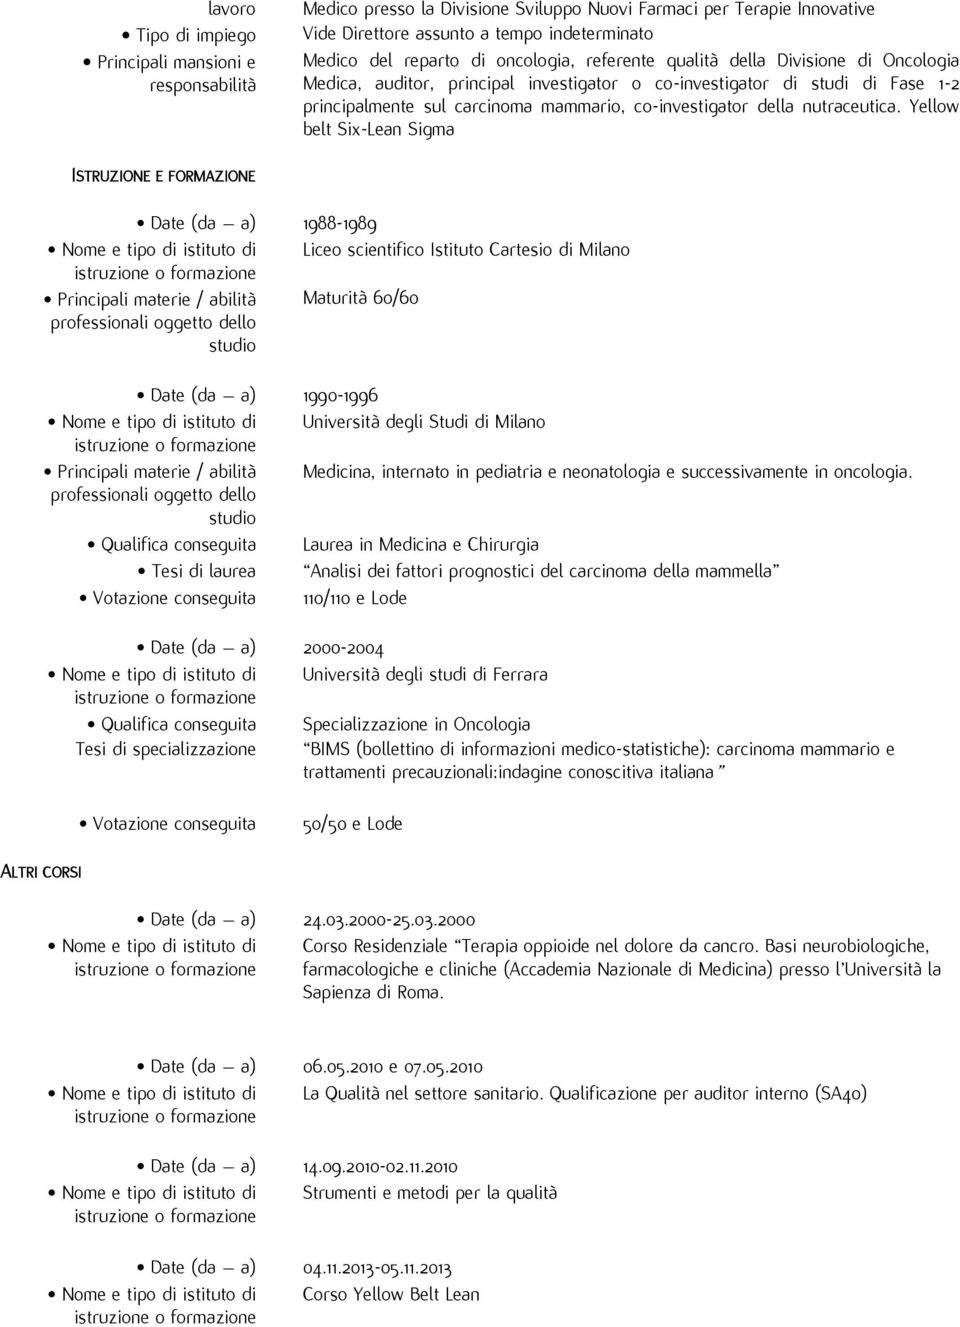 Yellow belt Six-Lean Sigma ISTRUZIONE E FORMAZIONE Date (da a) 1988-1989 Nome e tipo di istituto di Liceo scientifico Istituto Cartesio di Milano Principali materie / abilità Maturità 60/60